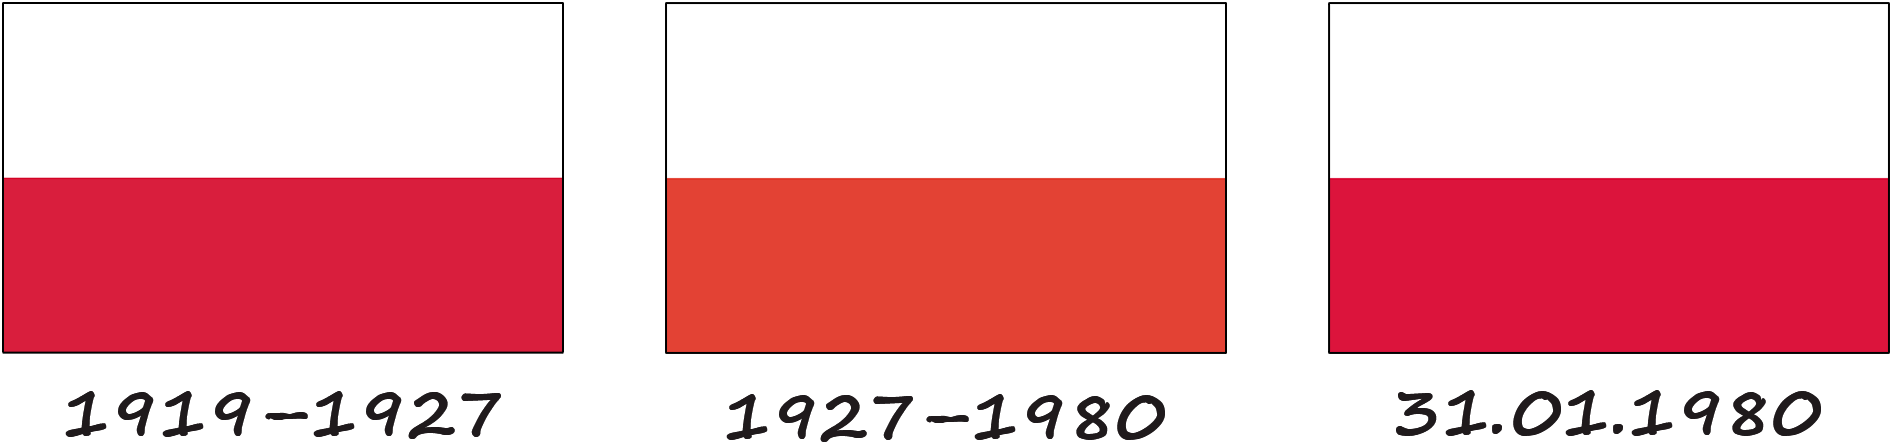 Історія польського прапора